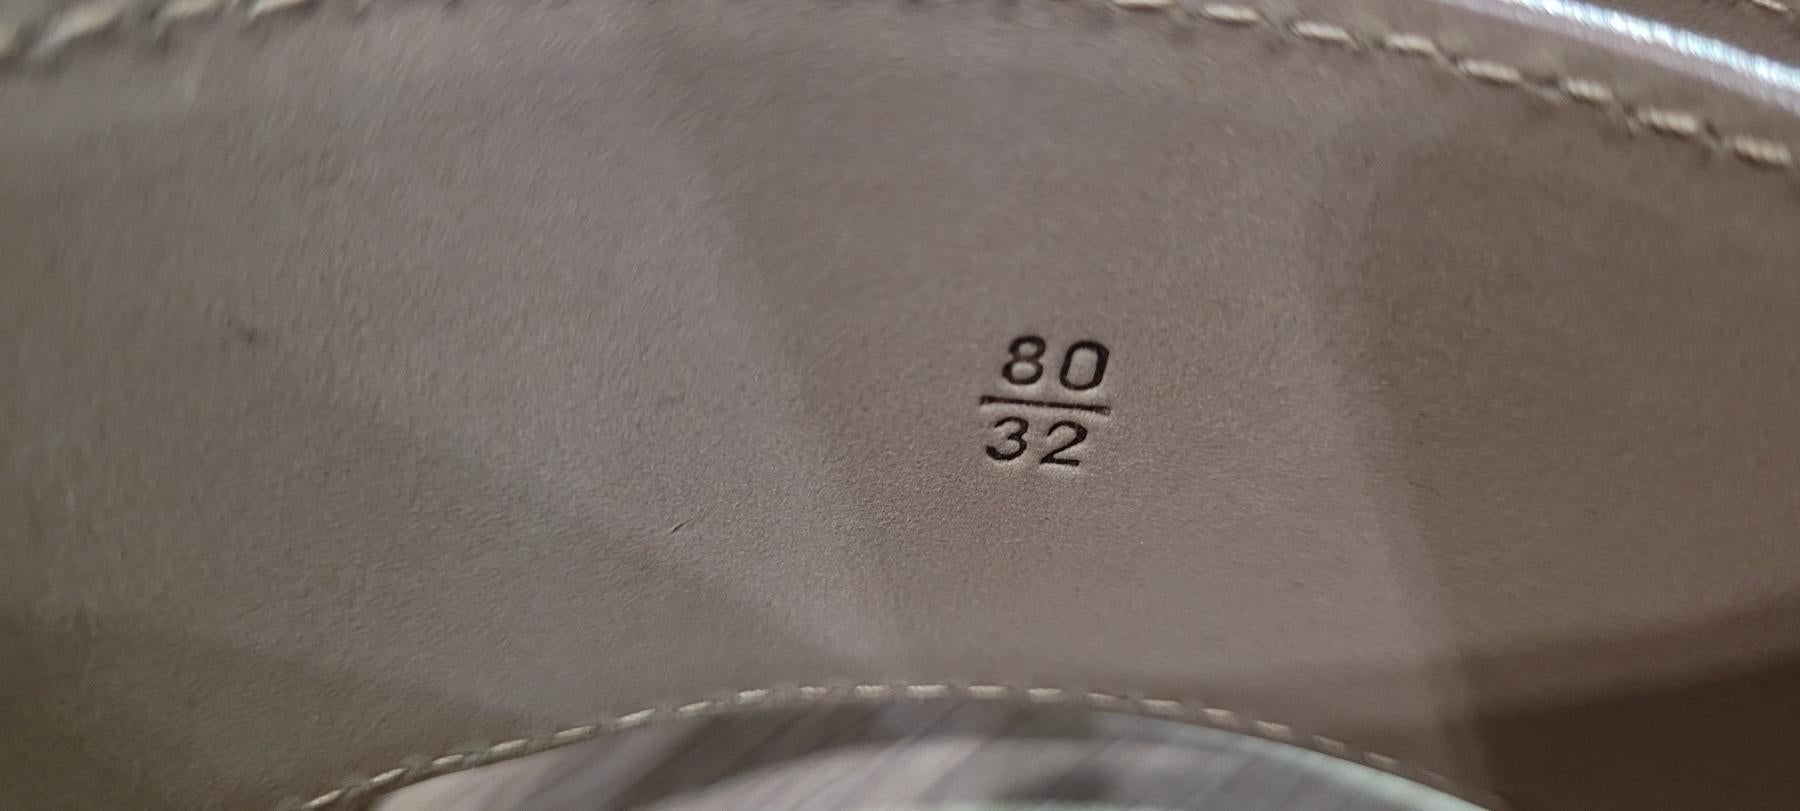 Authentique ceinture de Chanel en excellent état. 
La largeur de la ceinture est d'environ 4,5 cm
. Usure minimale de la boucle. L'intérieur présente des marques minimes et une usure légère, et l'extérieur présente des éraflures minimes et des